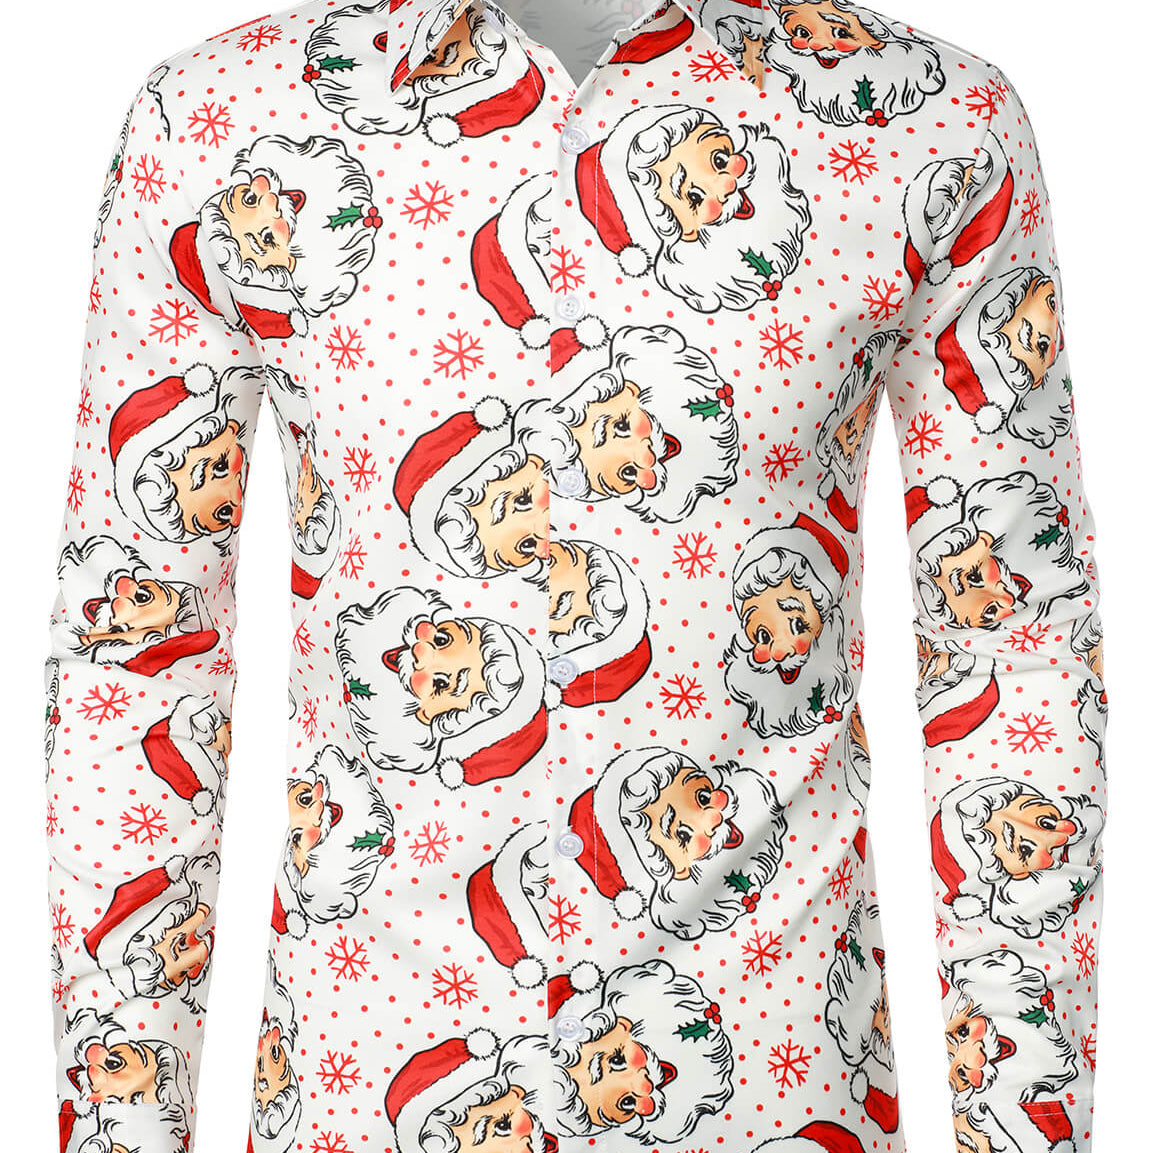 Camisa blanca de manga larga con botones navideños y estampado navideño de Papá Noel para hombre